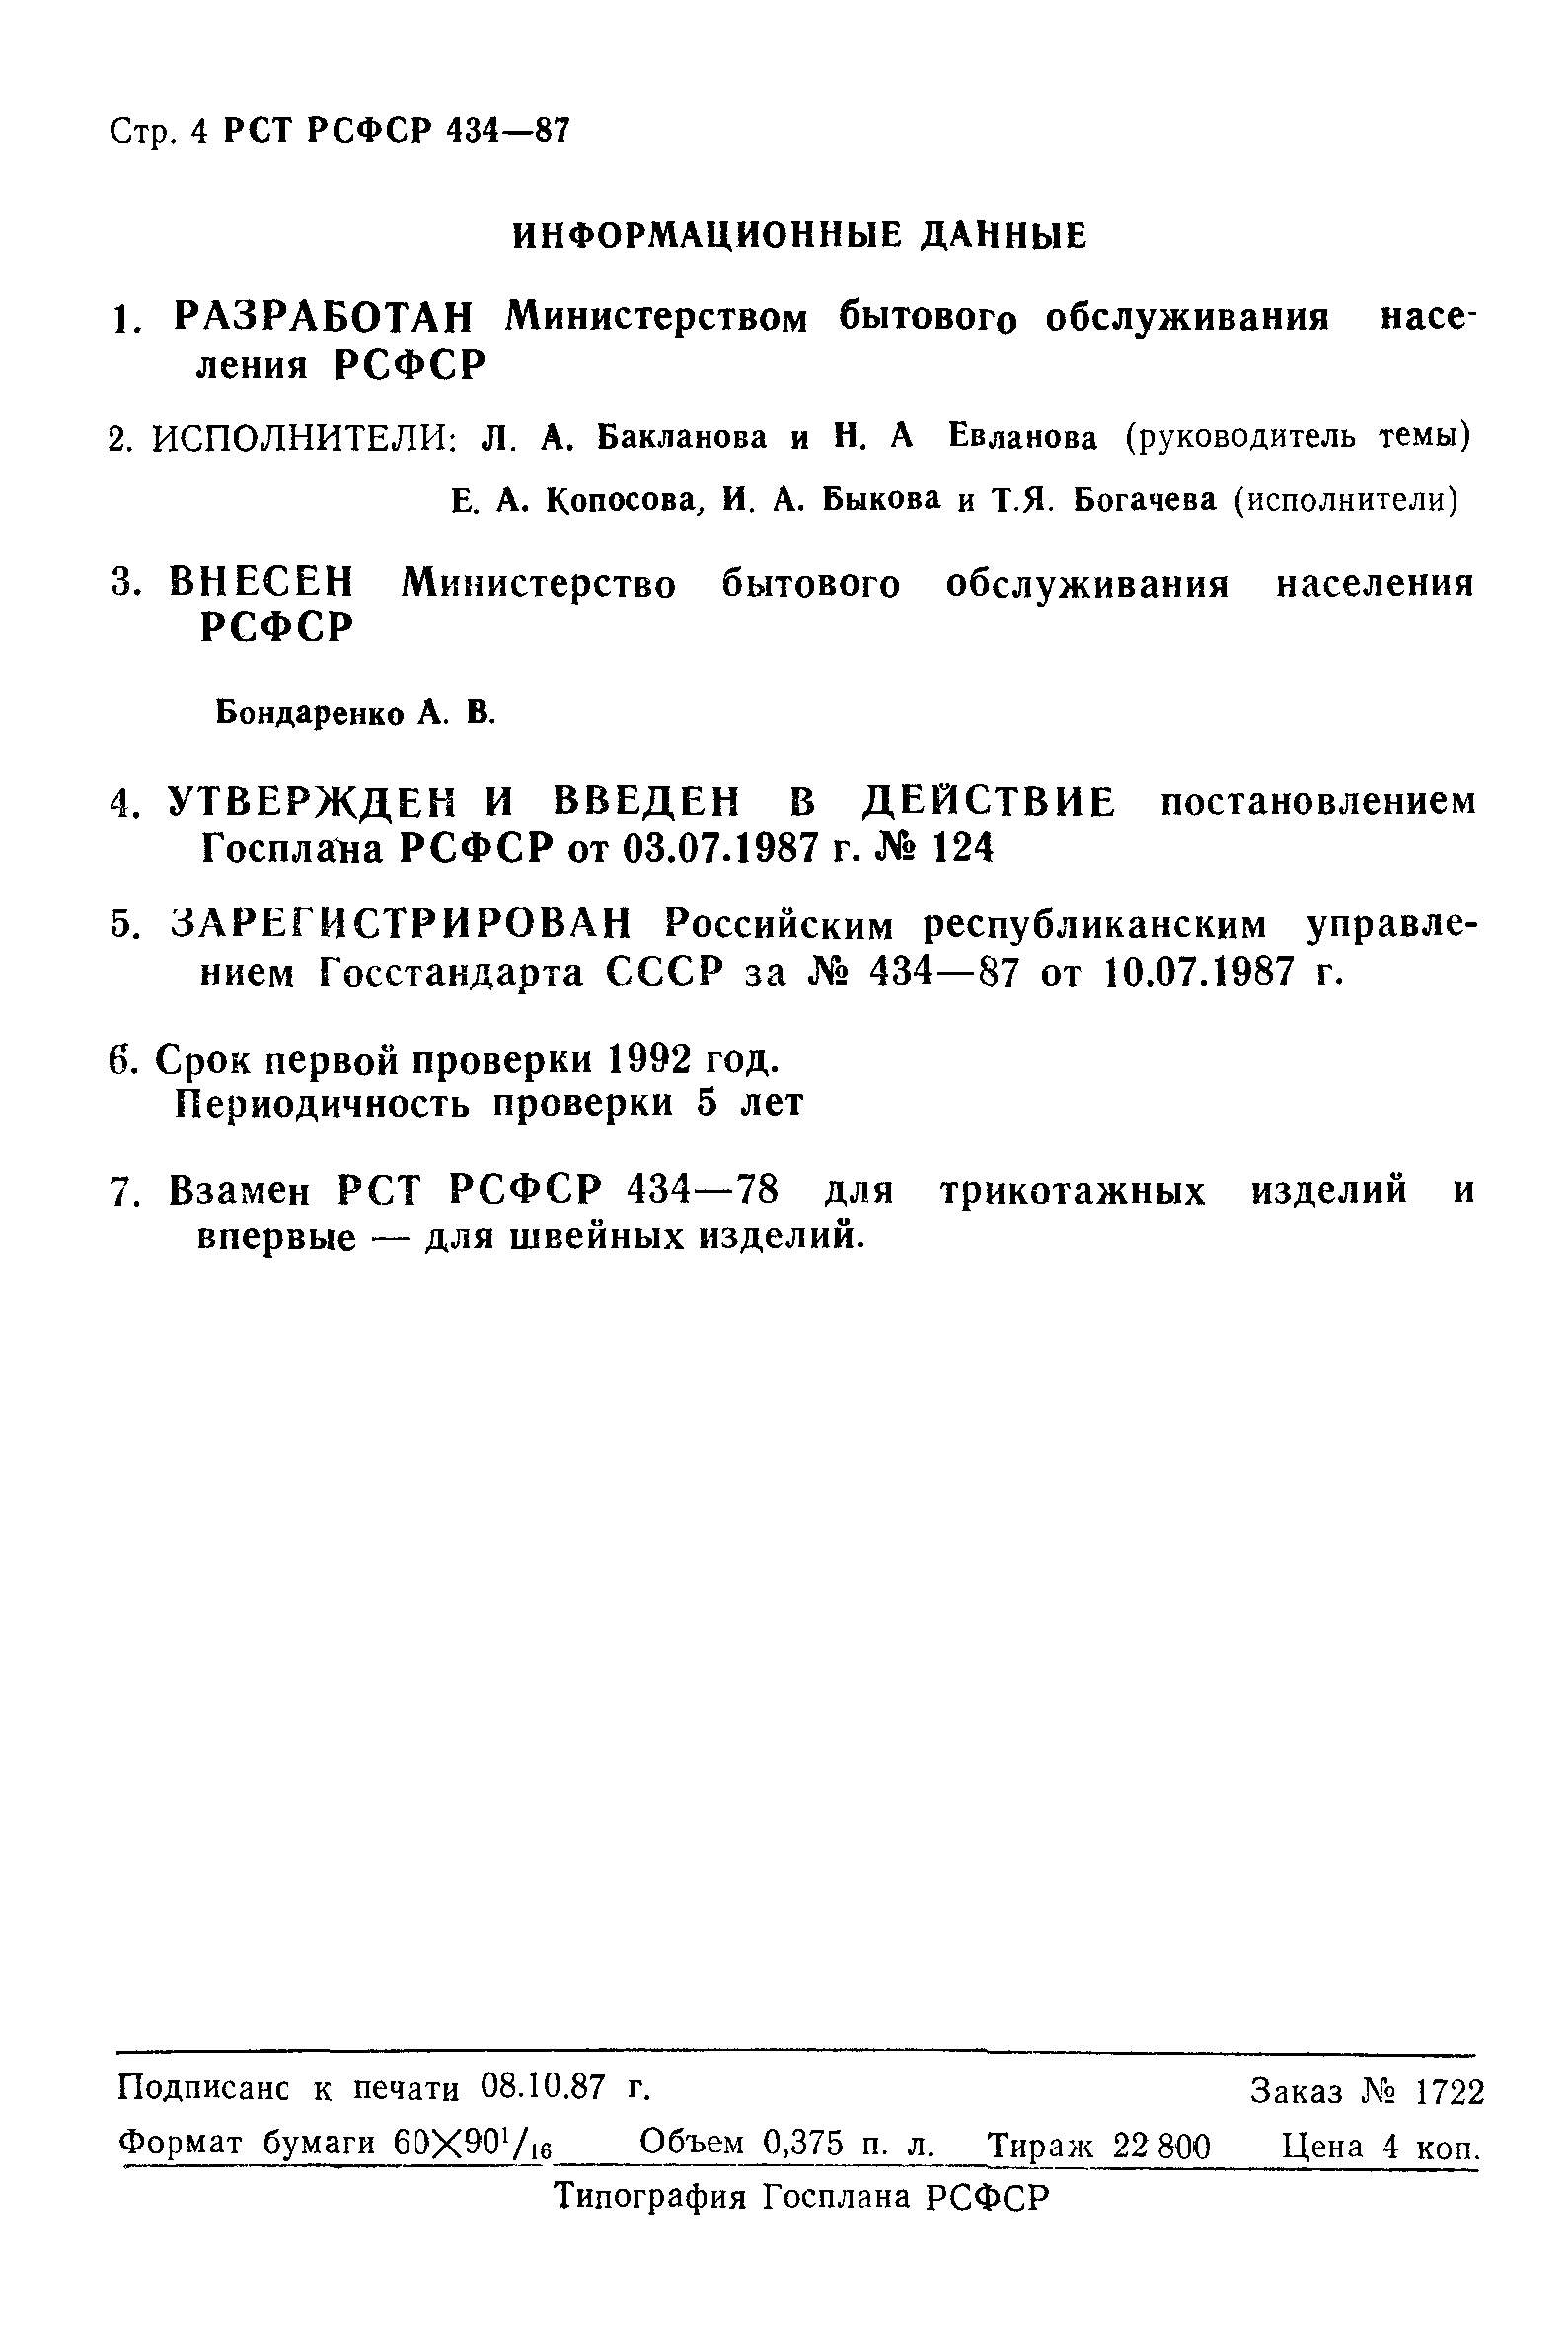 РСТ РСФСР 434-87